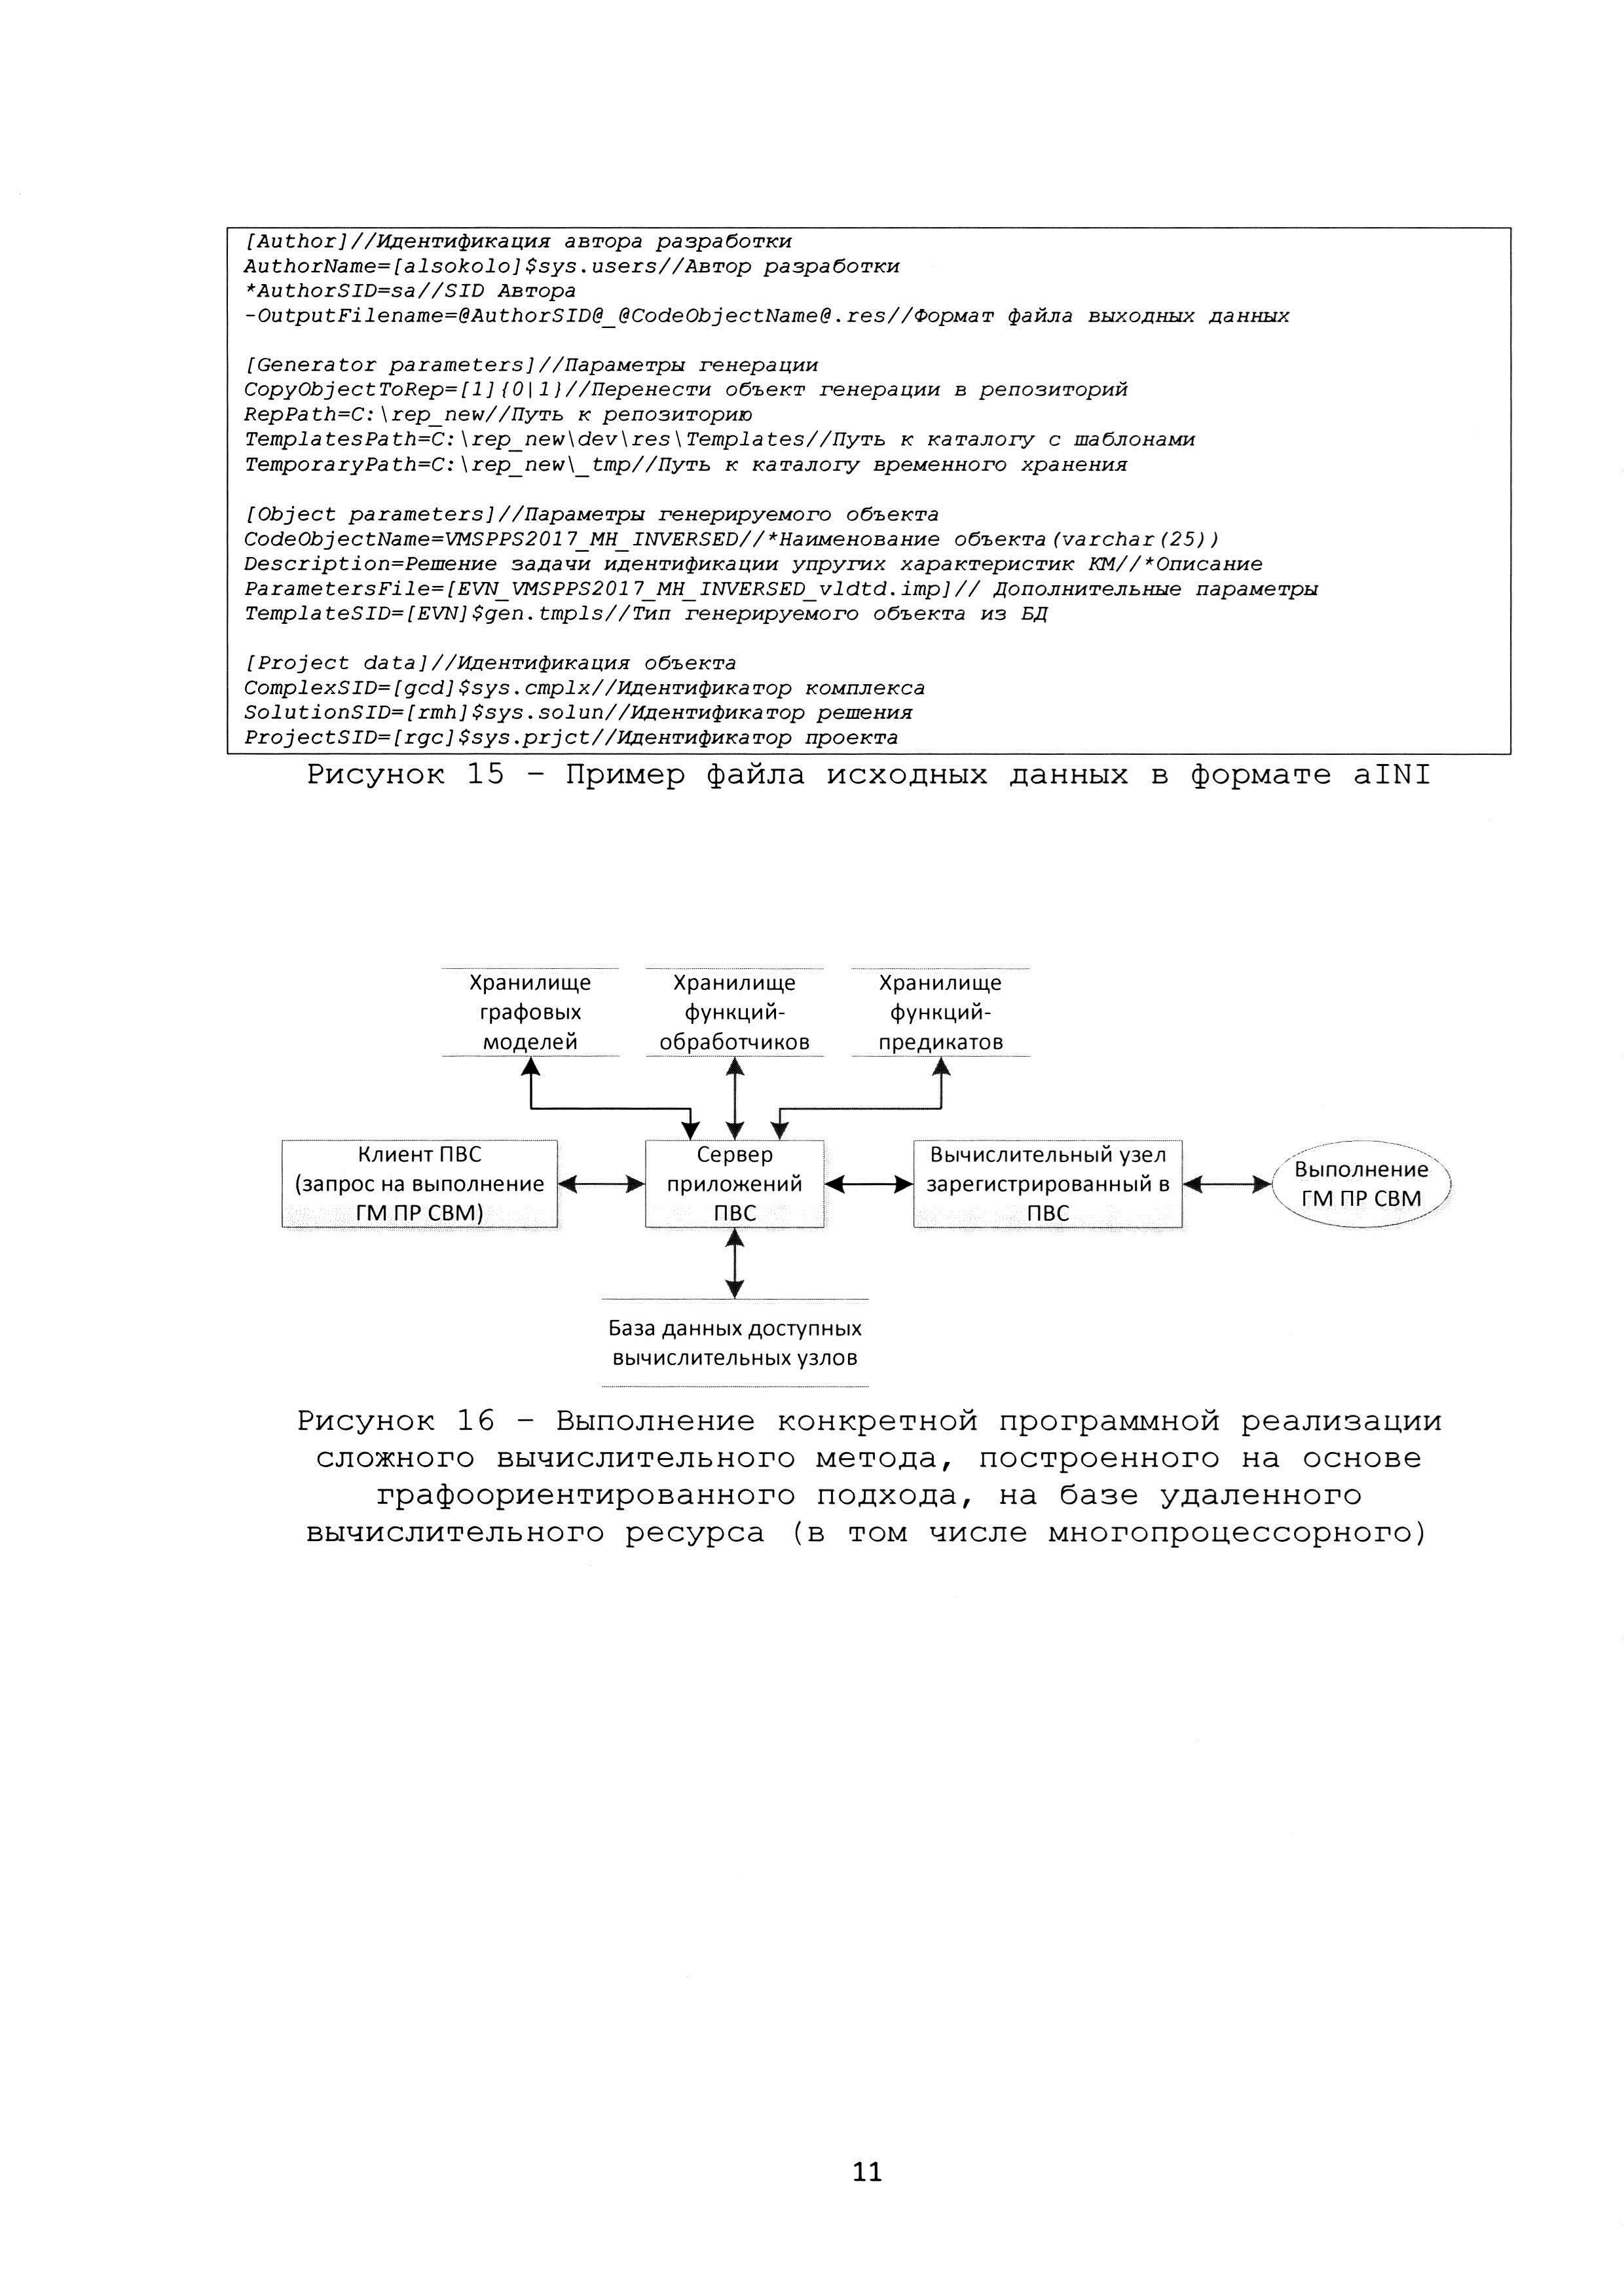 Способ и система графо-ориентированного создания масштабируемых и сопровождаемых программных реализаций сложных вычислительных методов